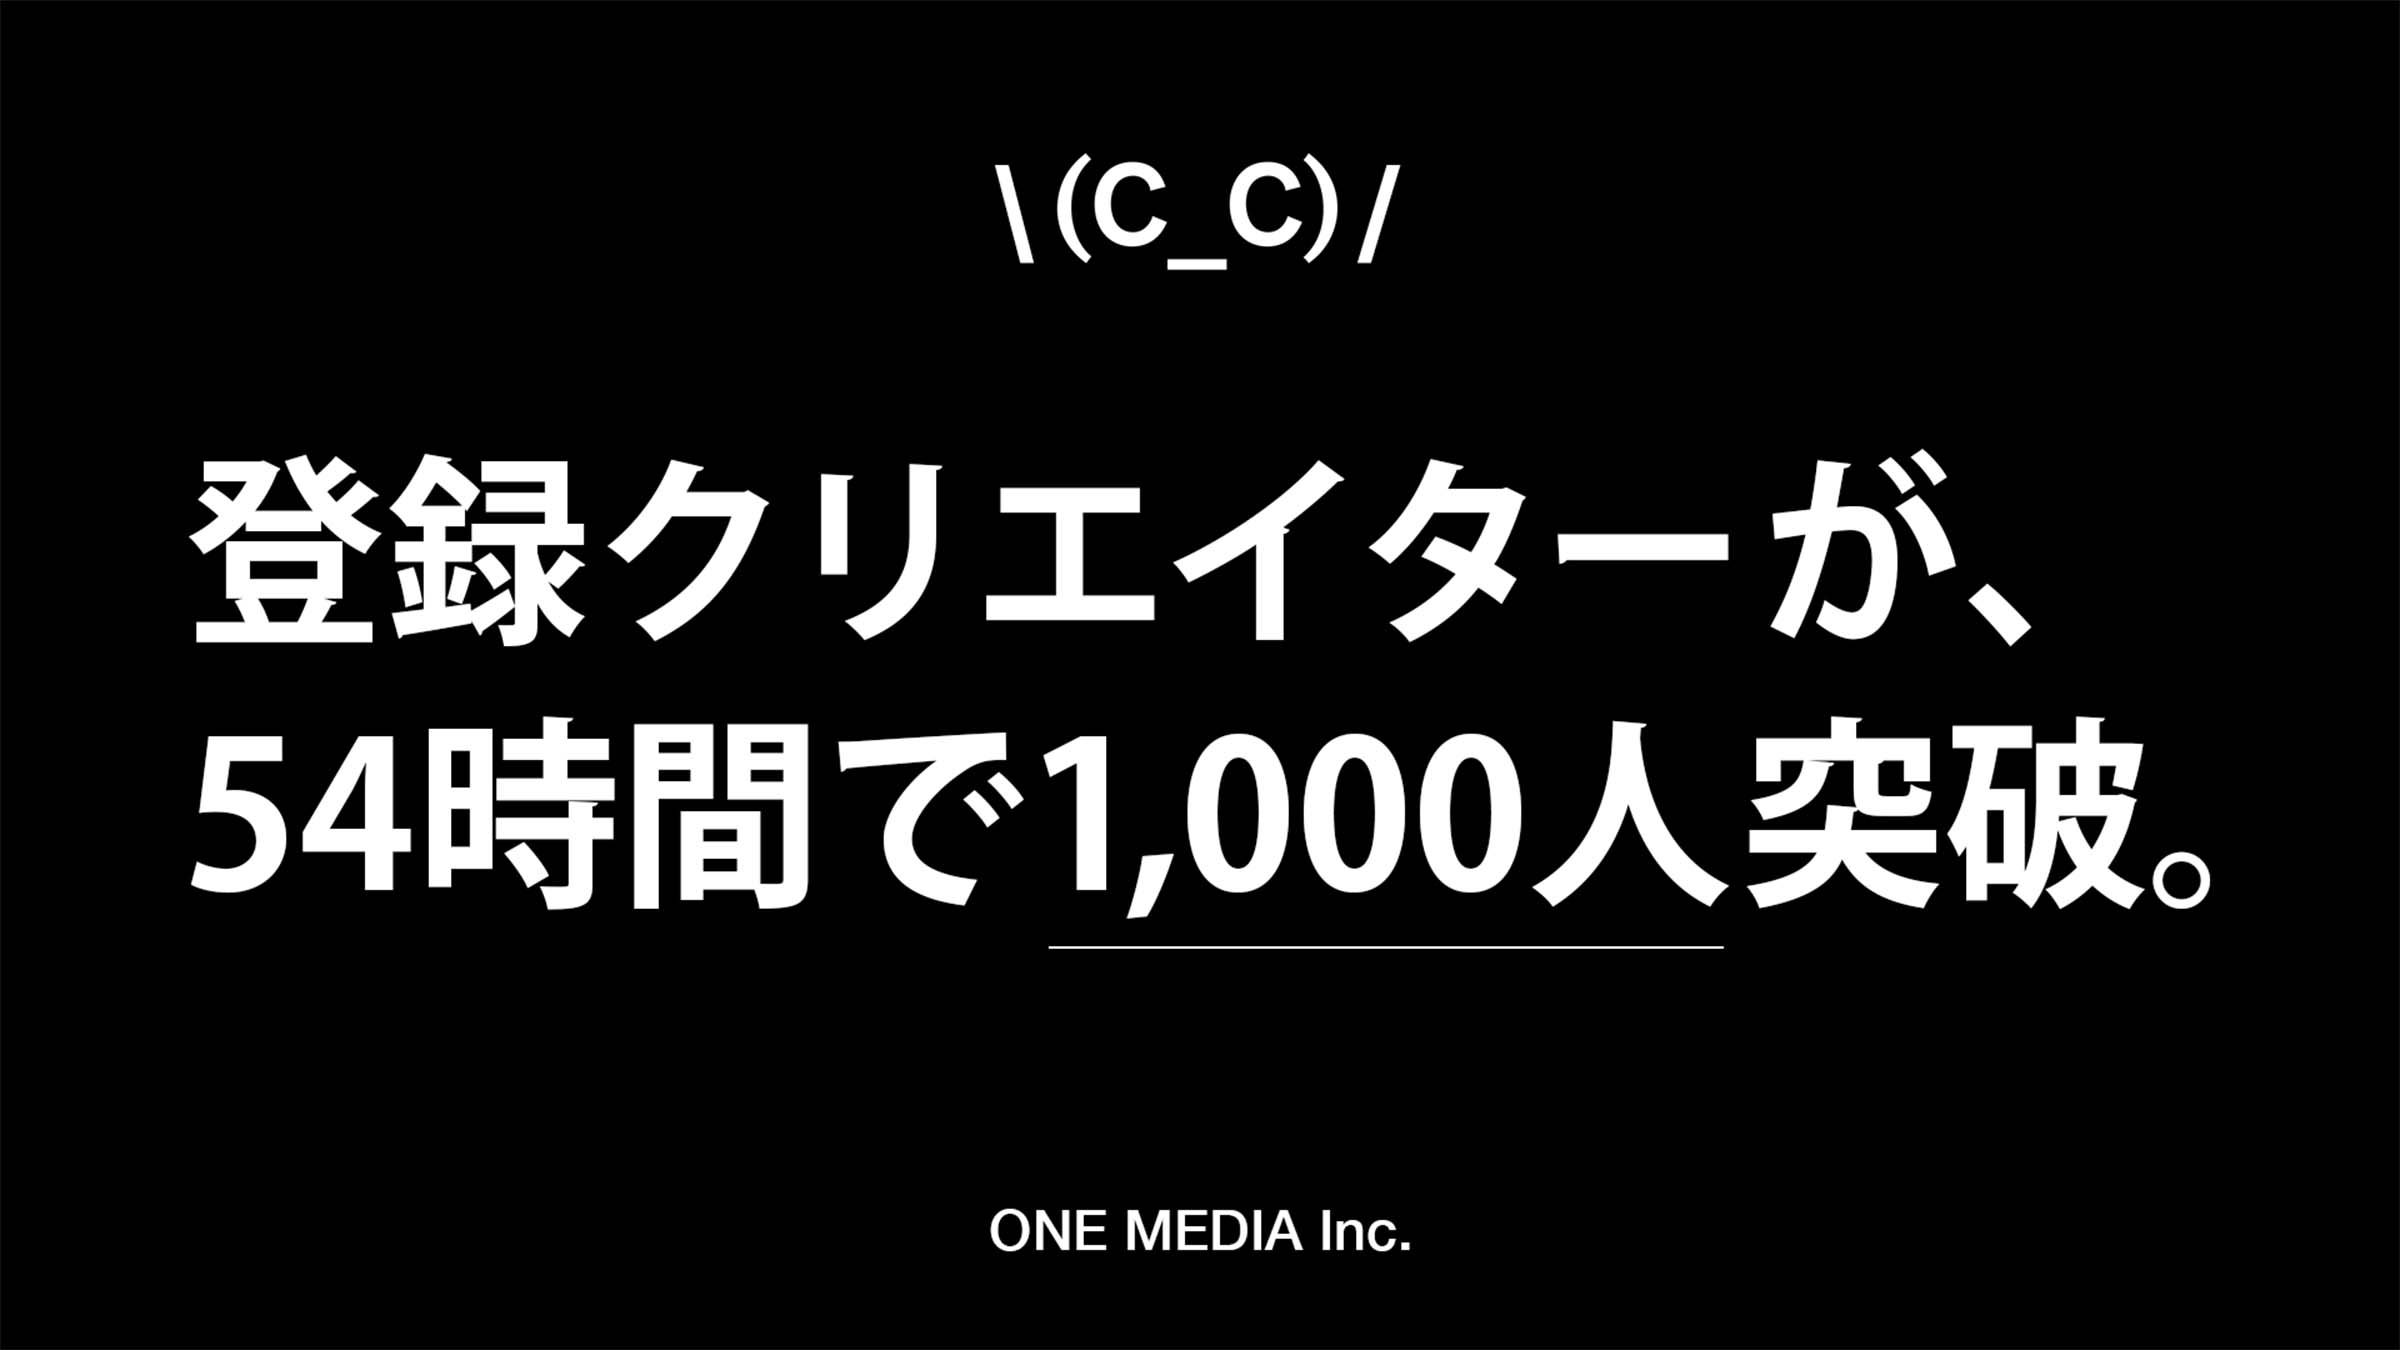 ワンメディアの新事業 クリエイターレーベル「(C_C)」（シーシー） 当初の登録者数目標1,000人を54時間で突破！の画像